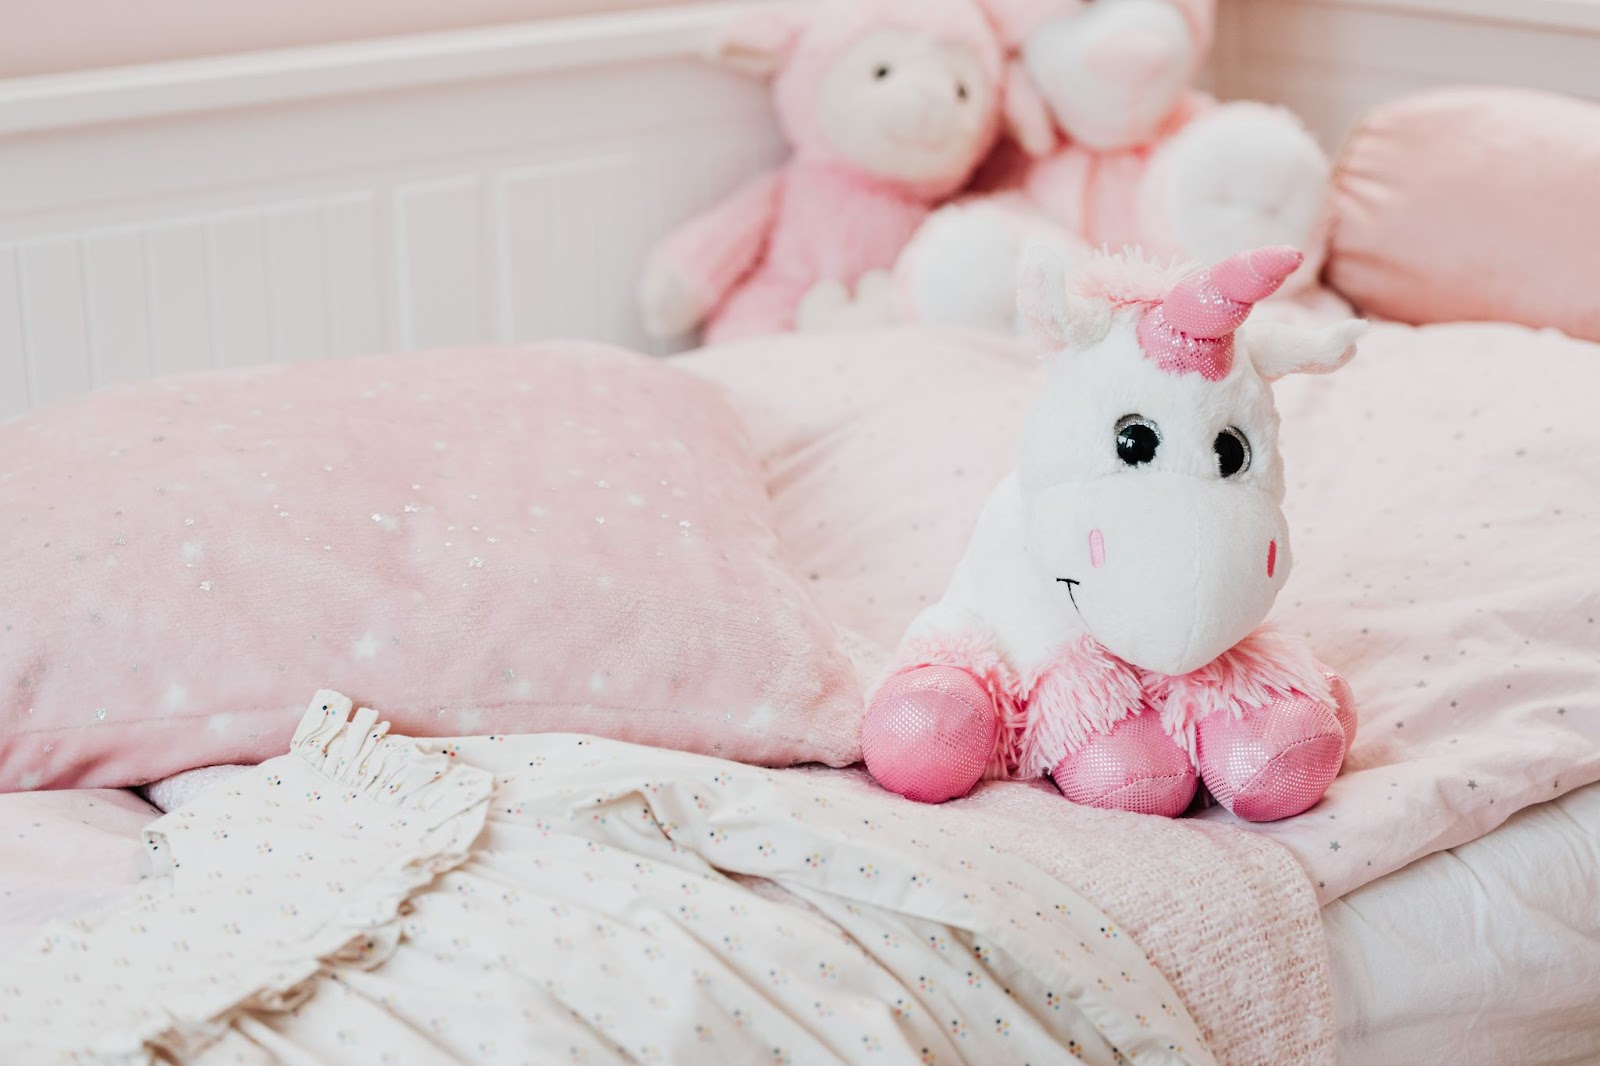 Baby girl’s bedroom -Toddler bedroom ideas featured image - Baby Journey